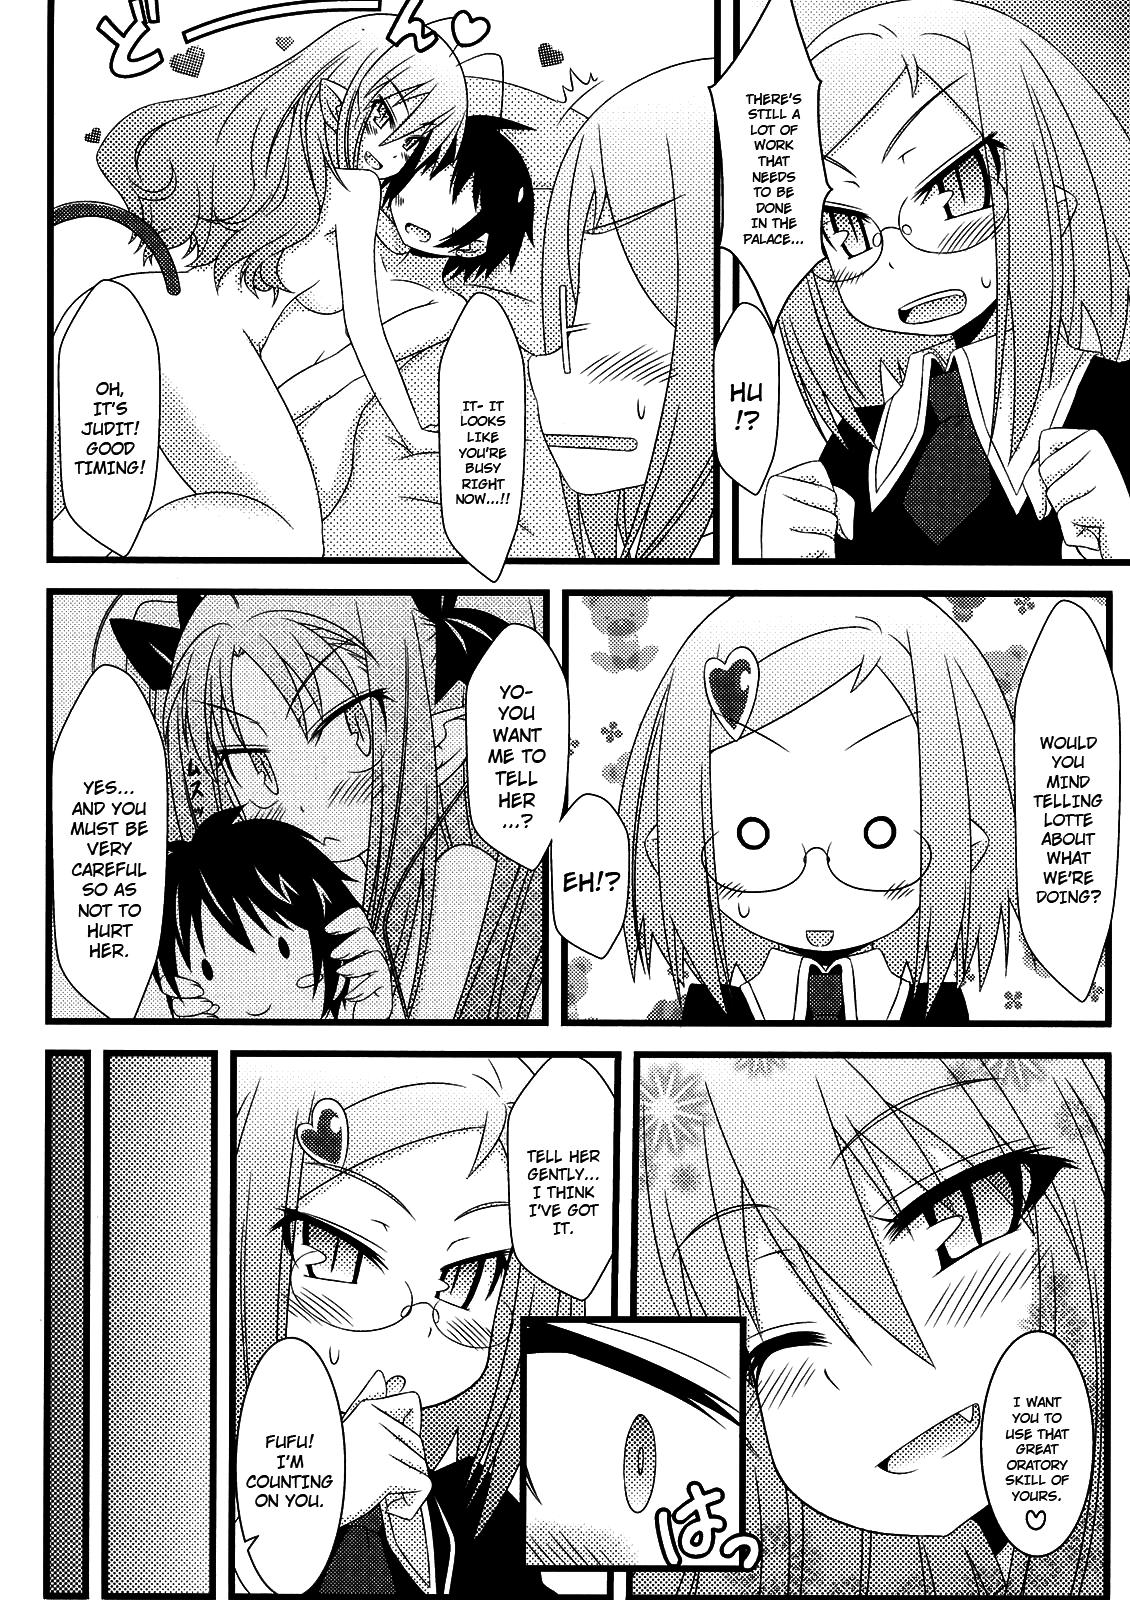 Petite Hajimete no Omocha! - Lotte no omocha Bokep - Page 11